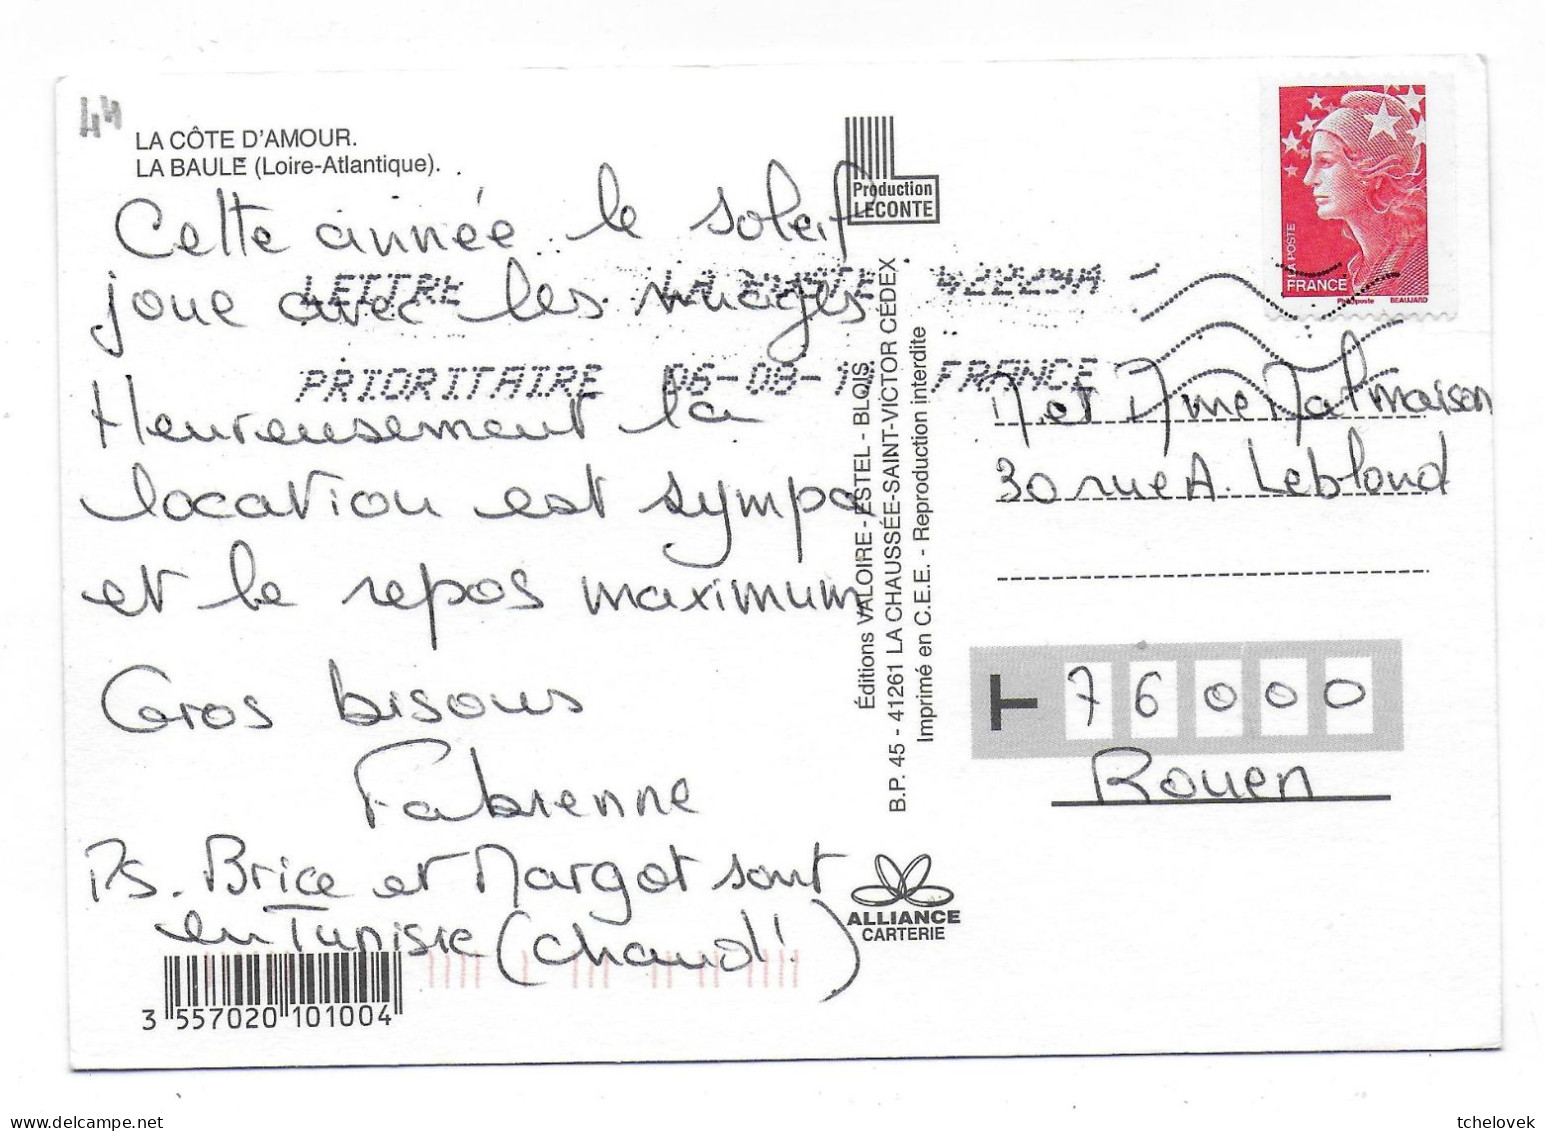 (44). Loire Atlantique. La Baule. Le Bois D'Amour & (2) & (3) - La Baule-Escoublac